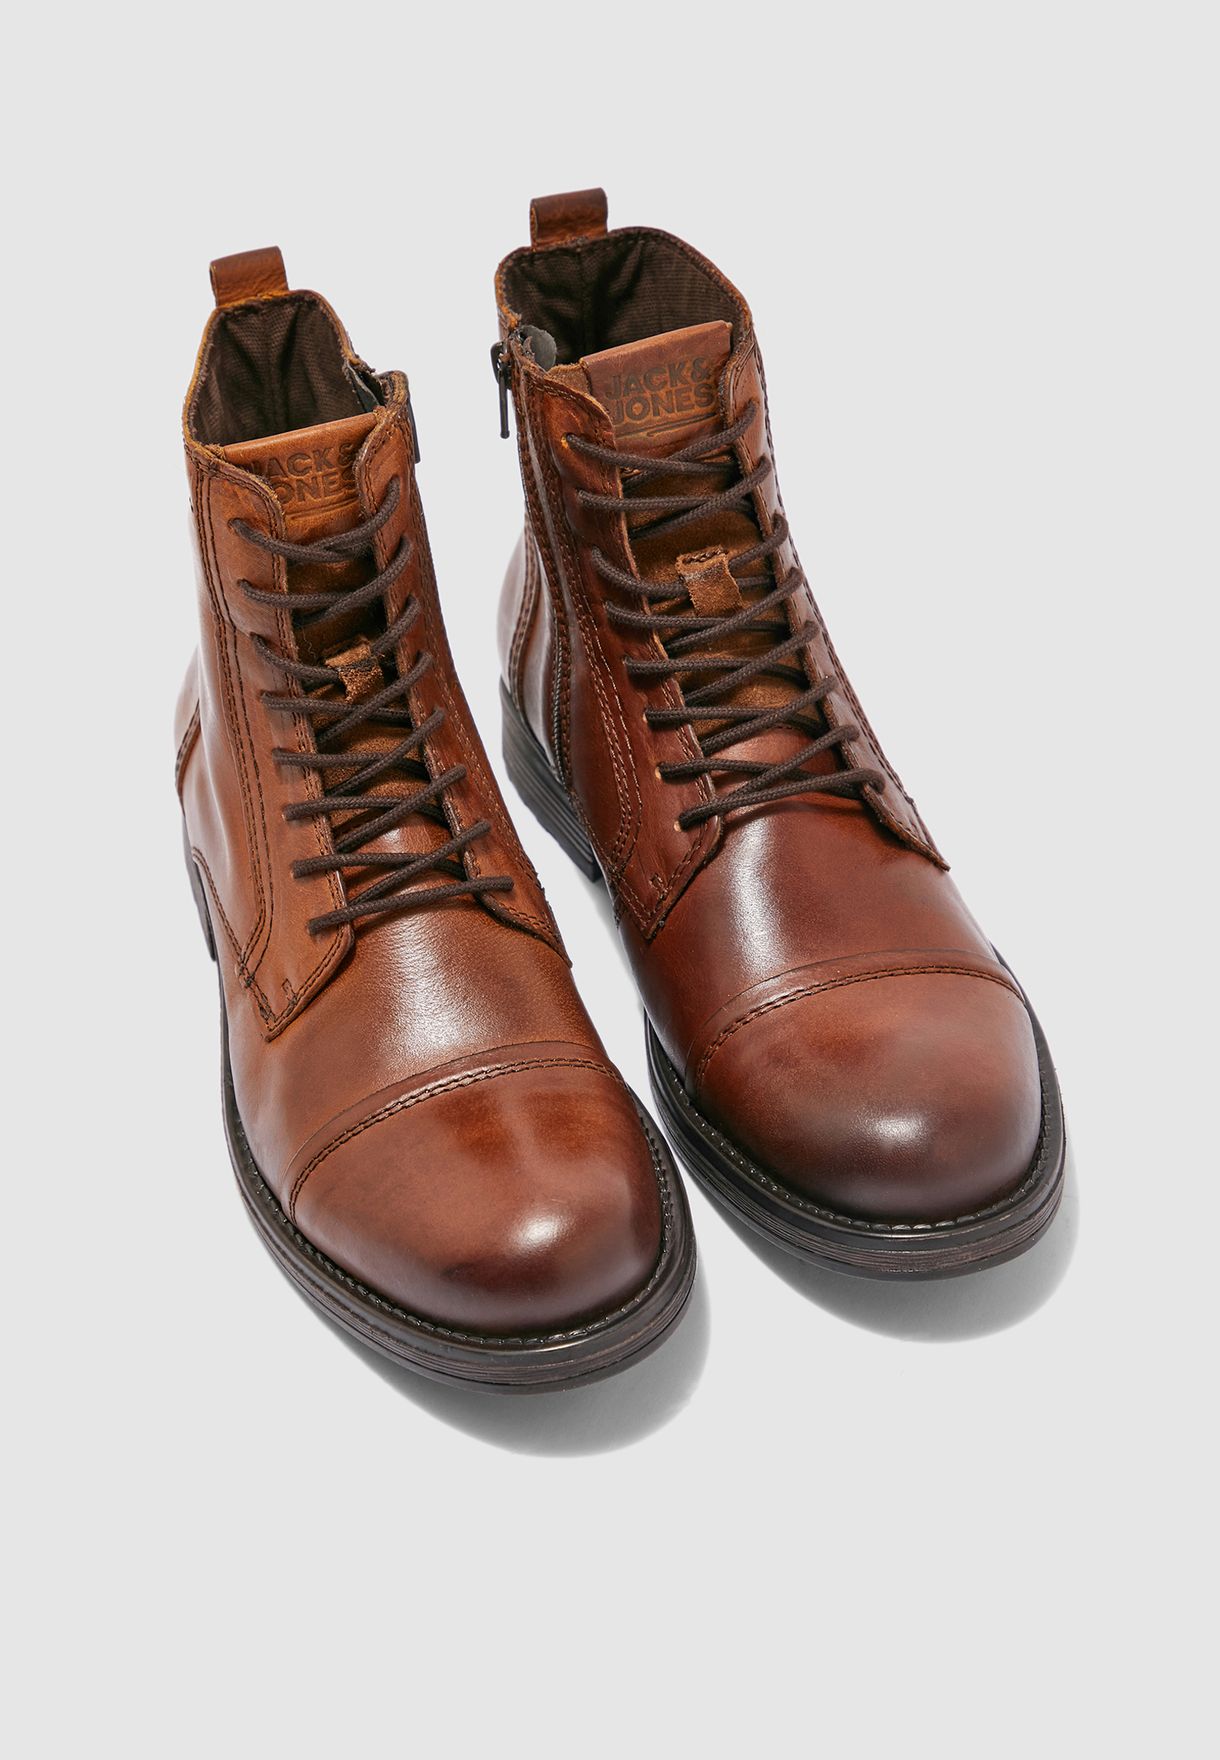 Spole tilbage Bliver værre Håndbog Buy Jack Jones brown Russel Boots for Men in MENA, Worldwide